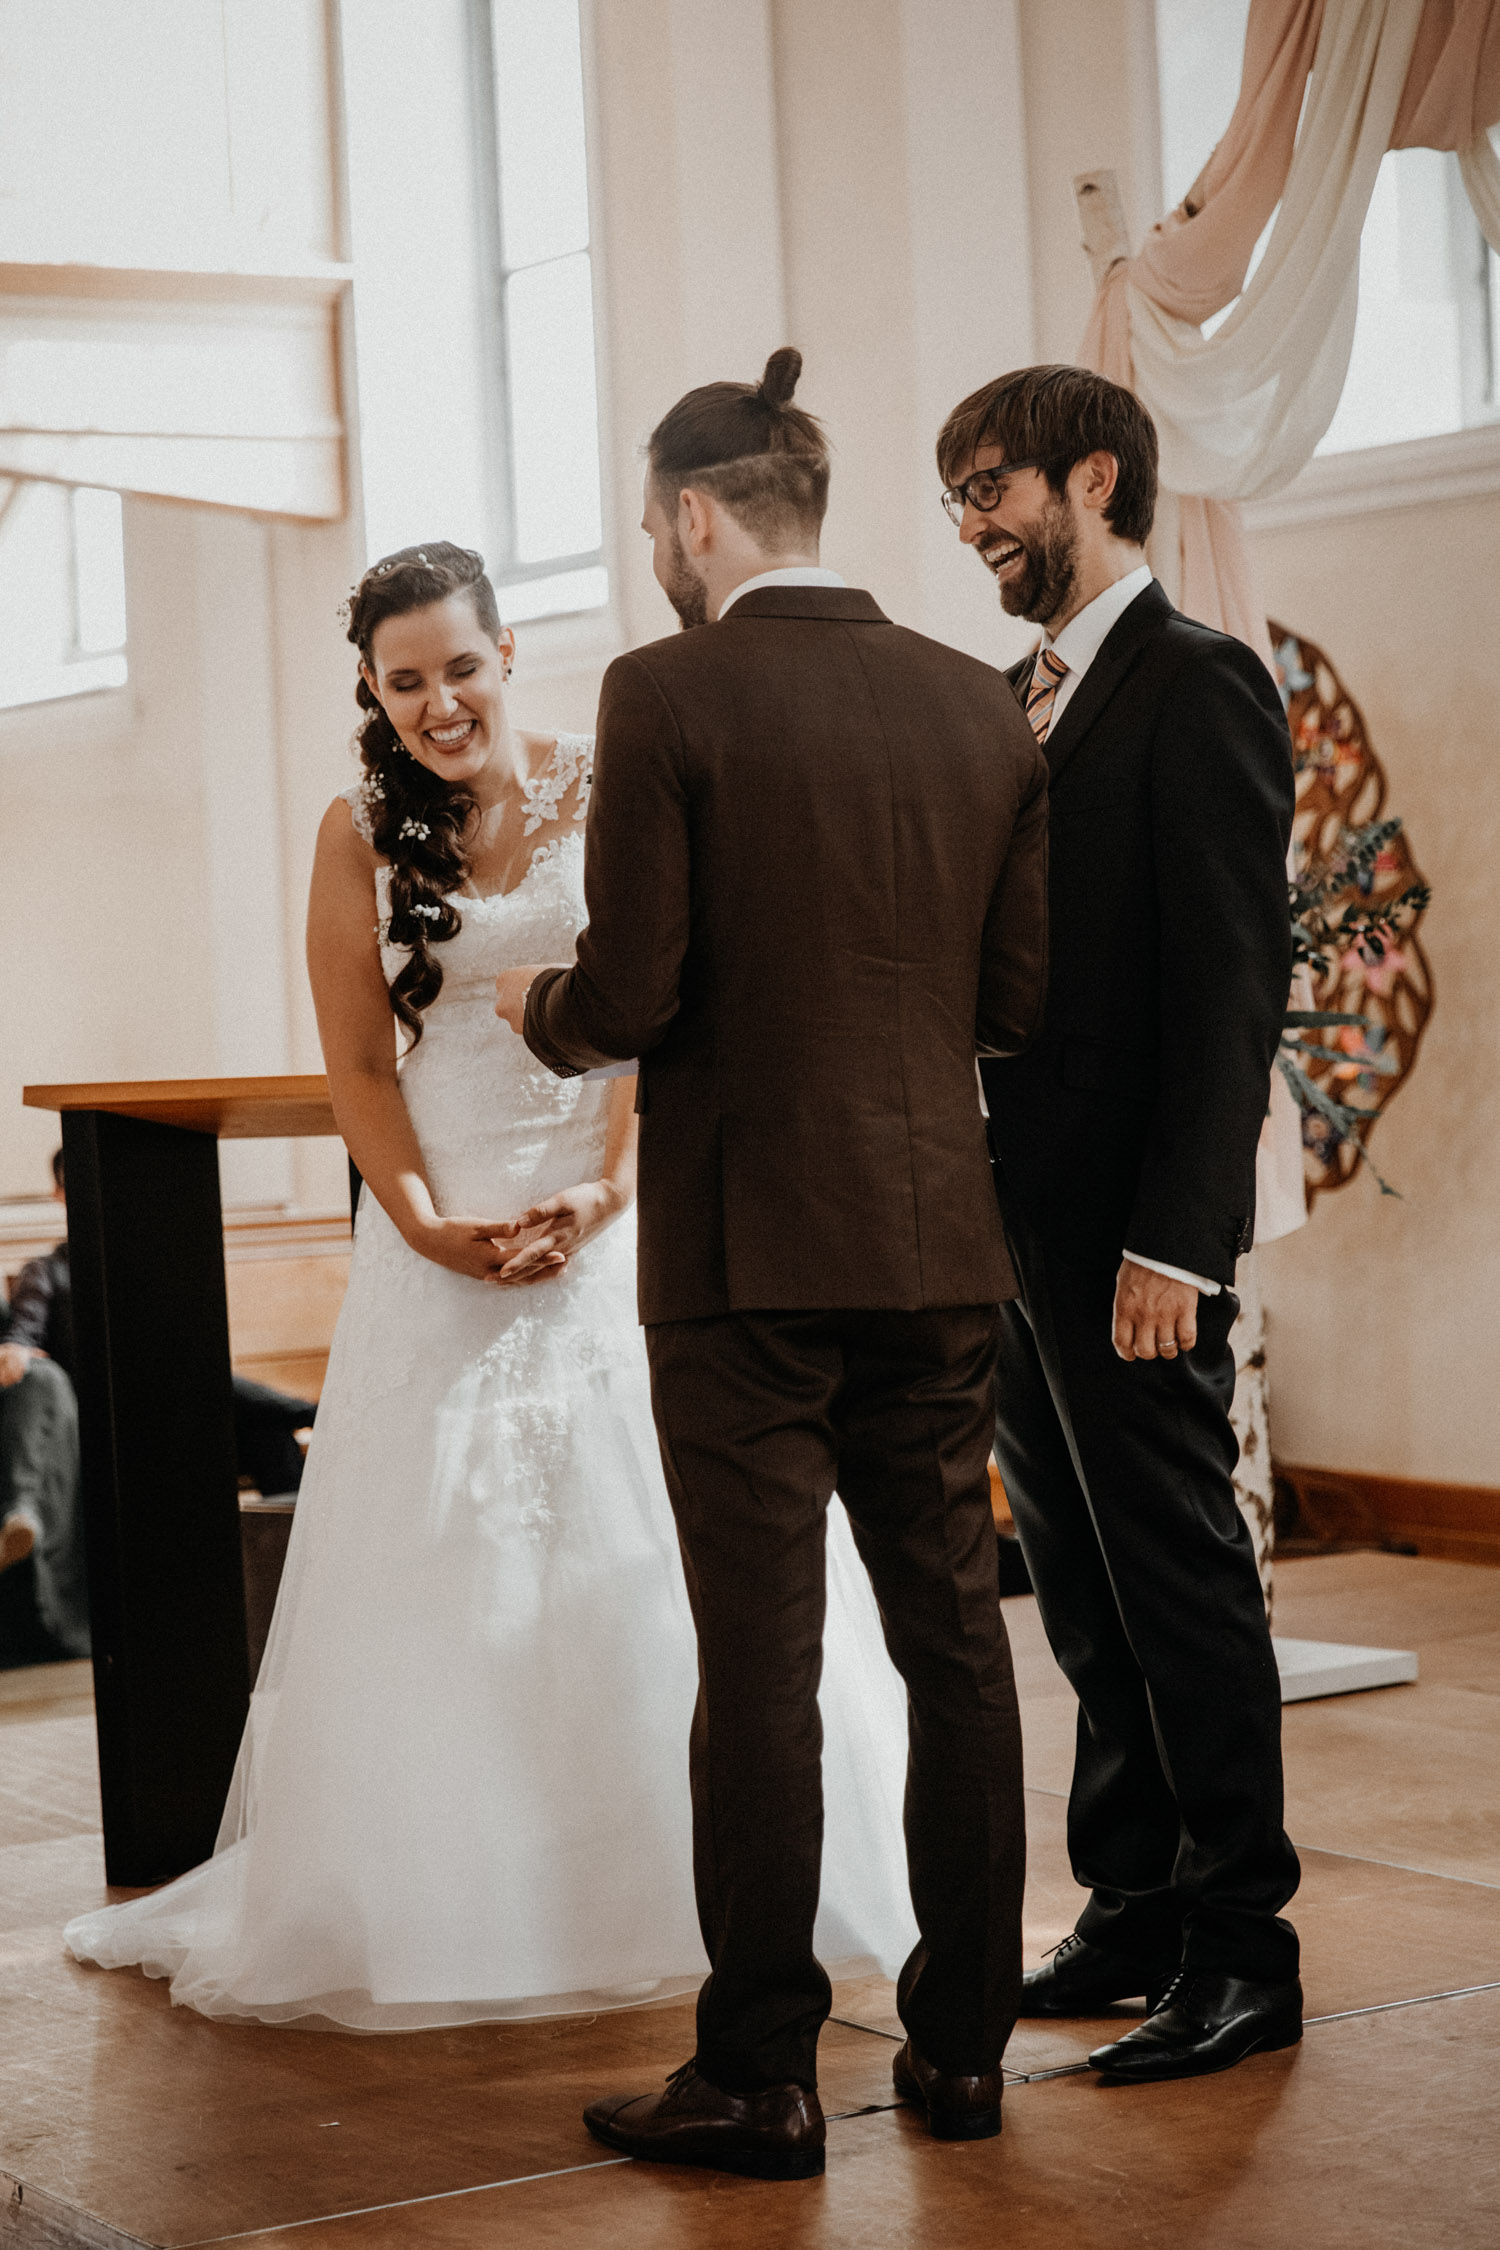 Wedding photographer in Switzerland church wedding